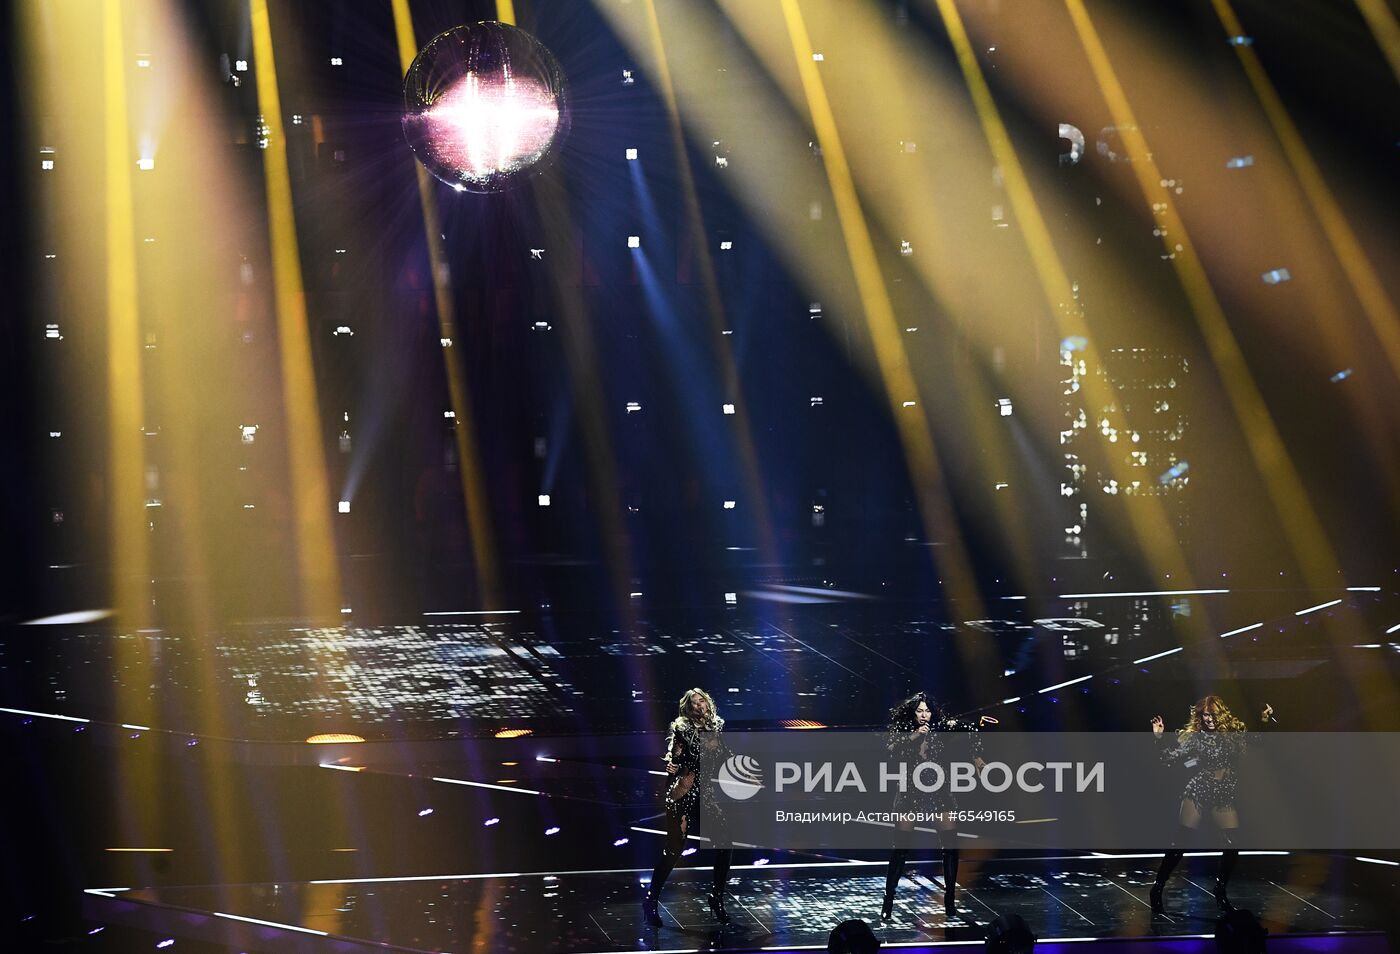 Сербия выступает на репетиции второго полуфинала конкурса песни "Евровидение-2021" в Роттердаме.Репетиция второго полуфинала конкурса Евровидение-2021